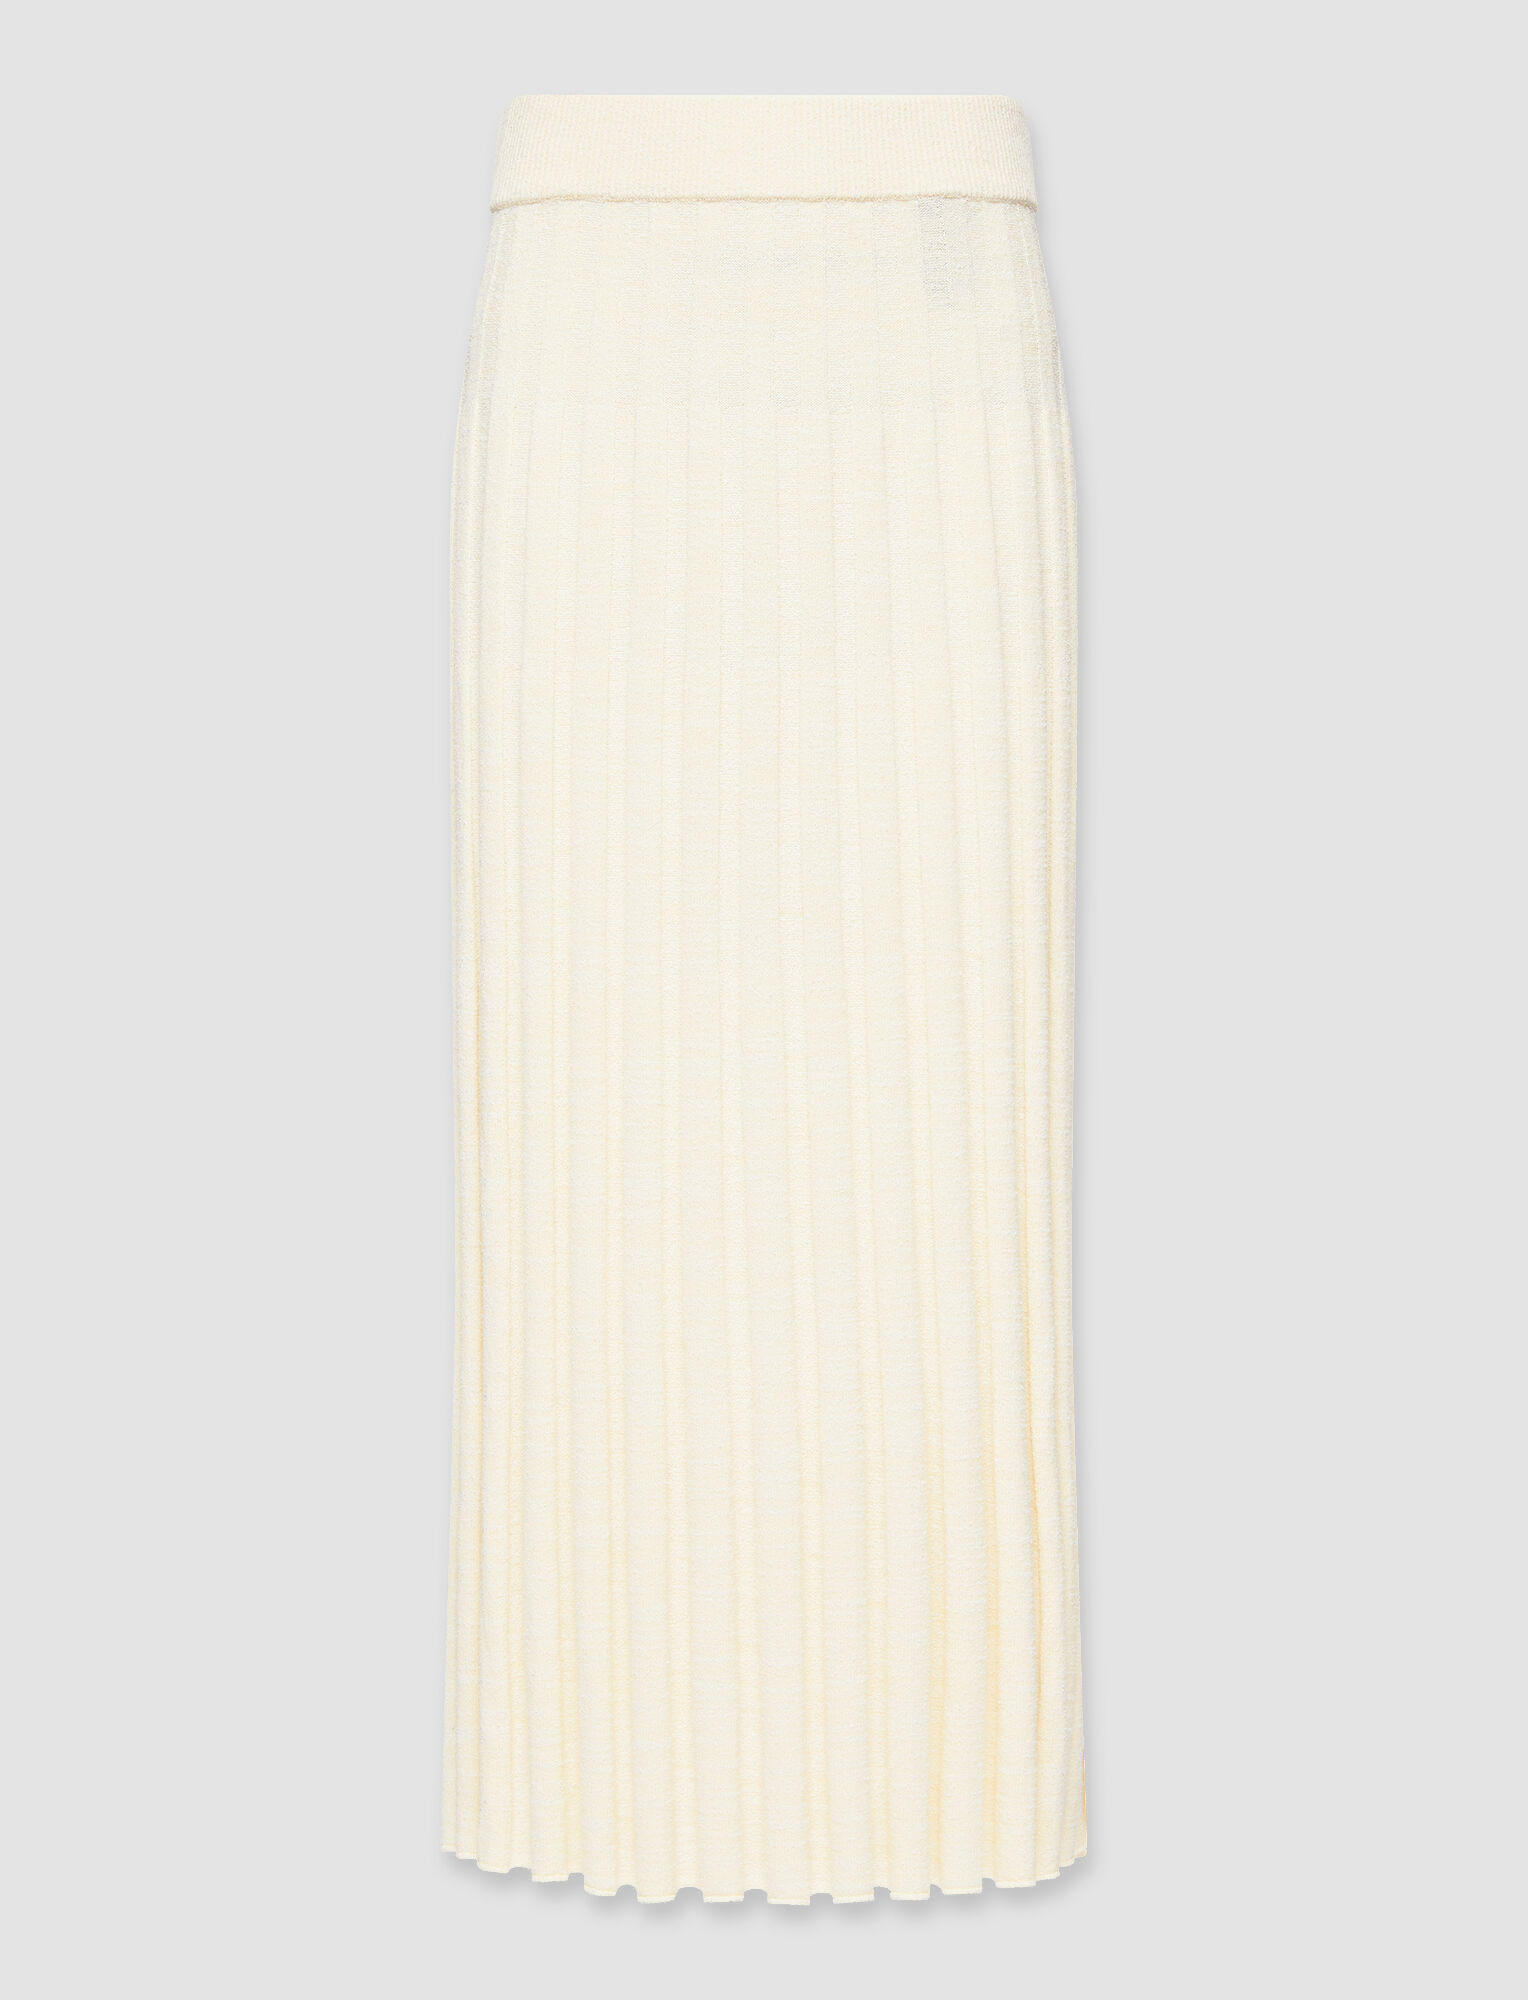 Joseph, Textured Rib Skirt, in Ivory